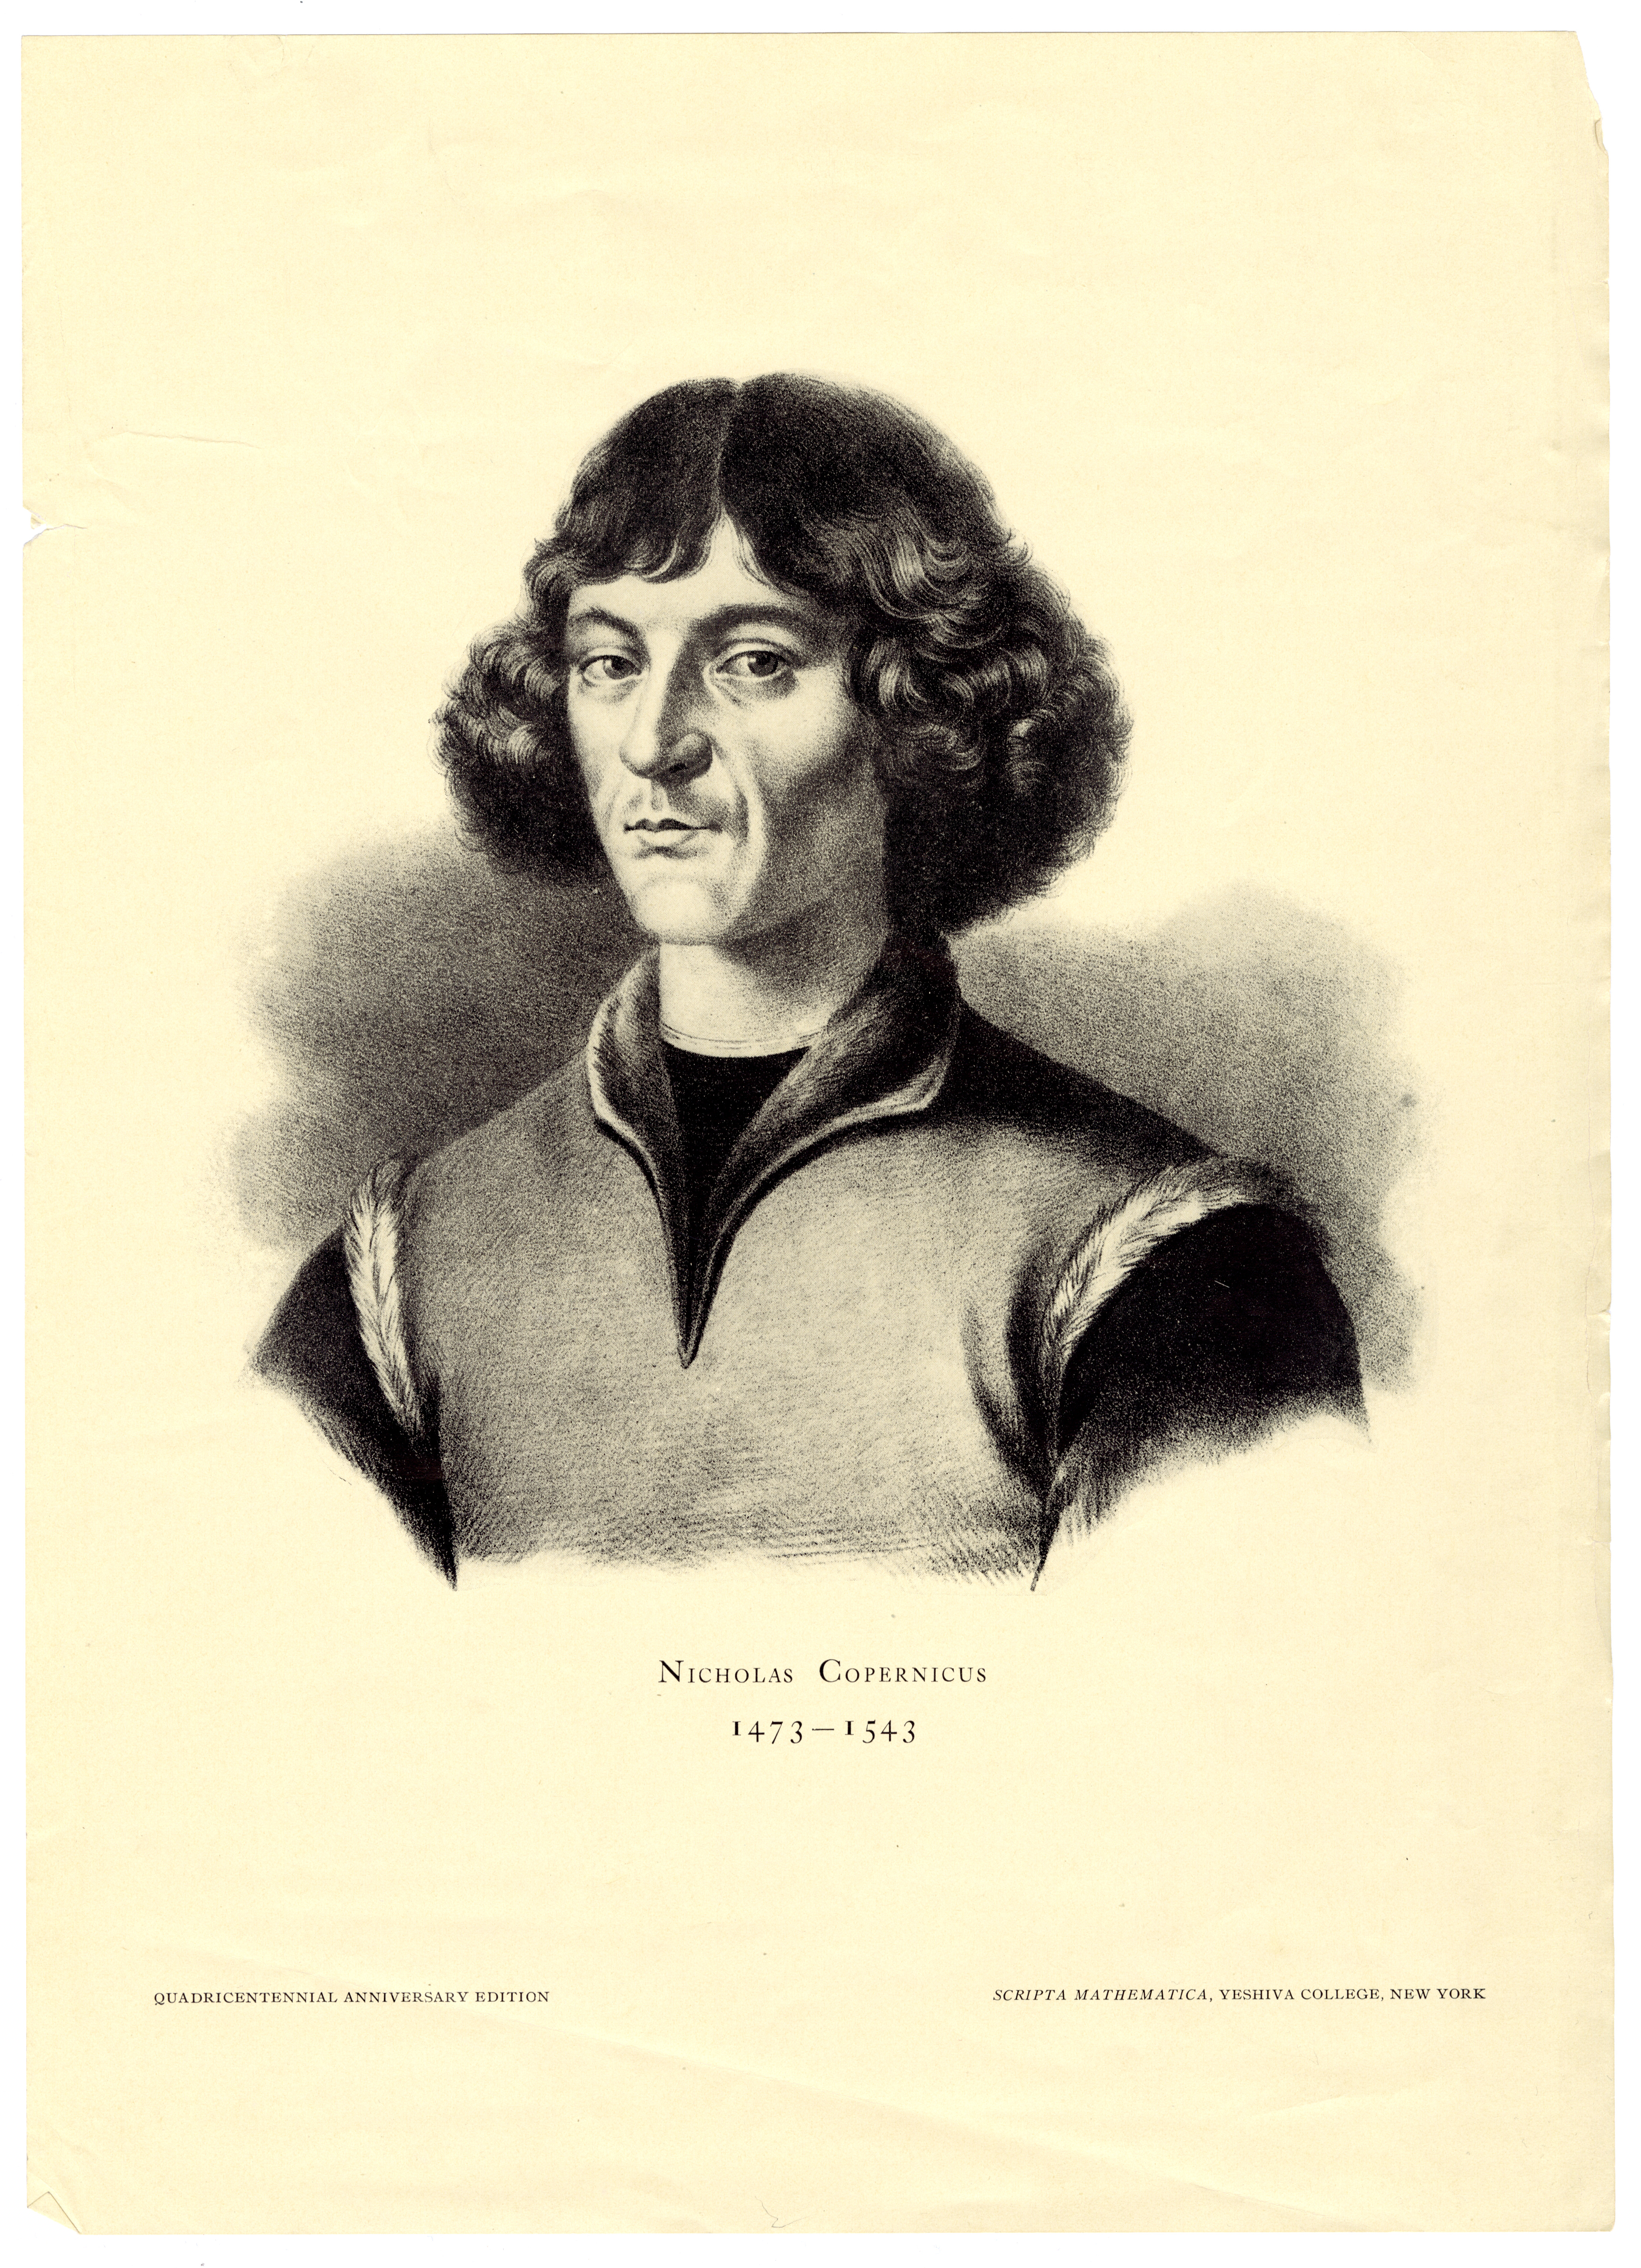 Nicholaus Copernicus engraving